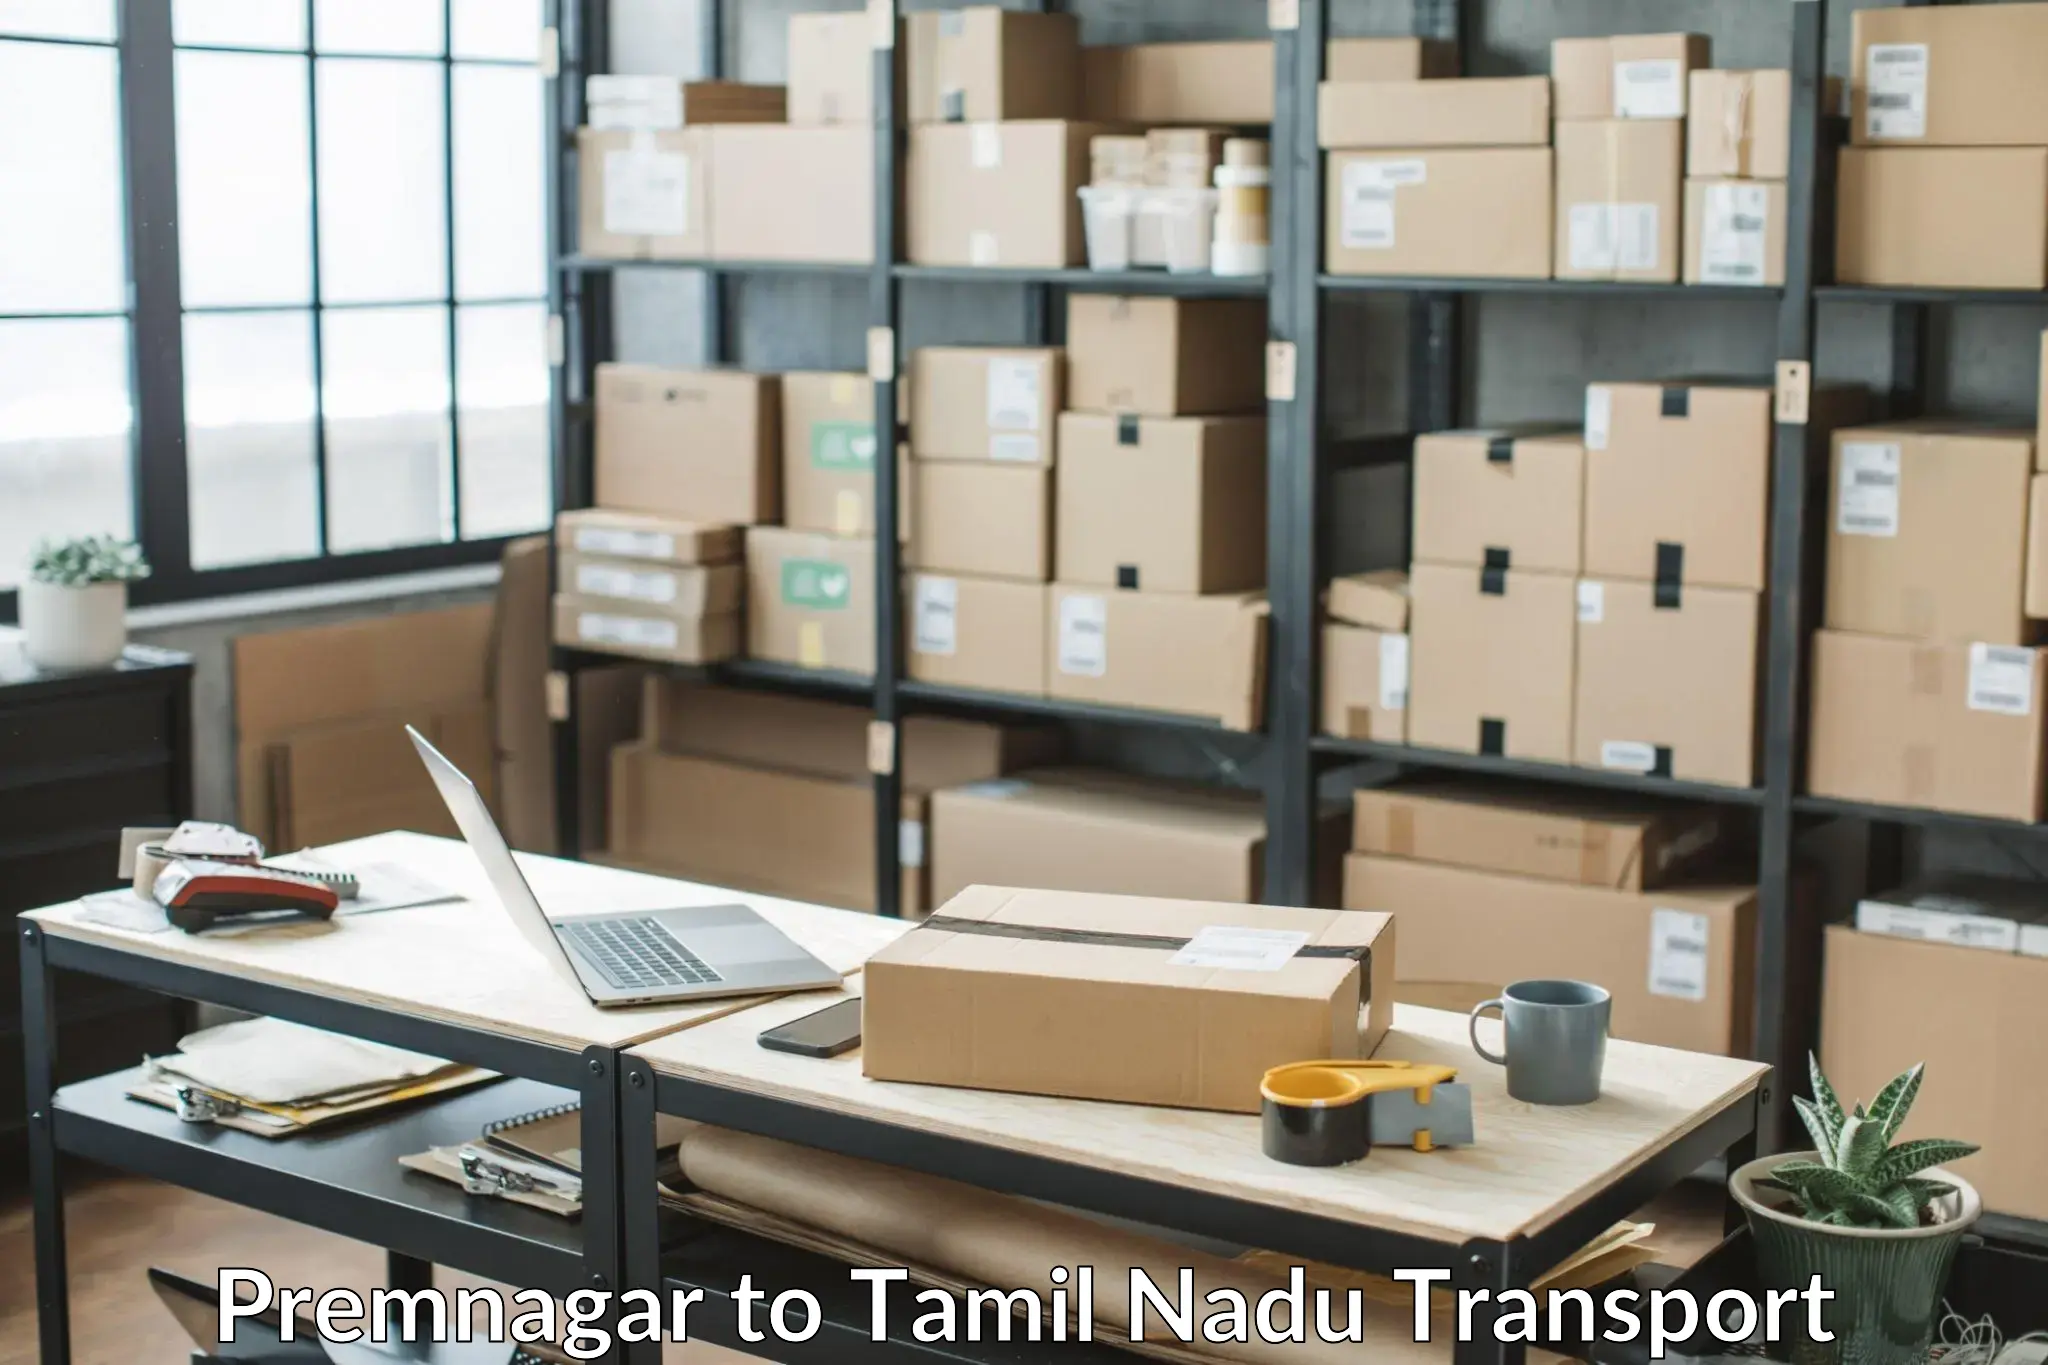 Nationwide transport services Premnagar to Tamil Nadu